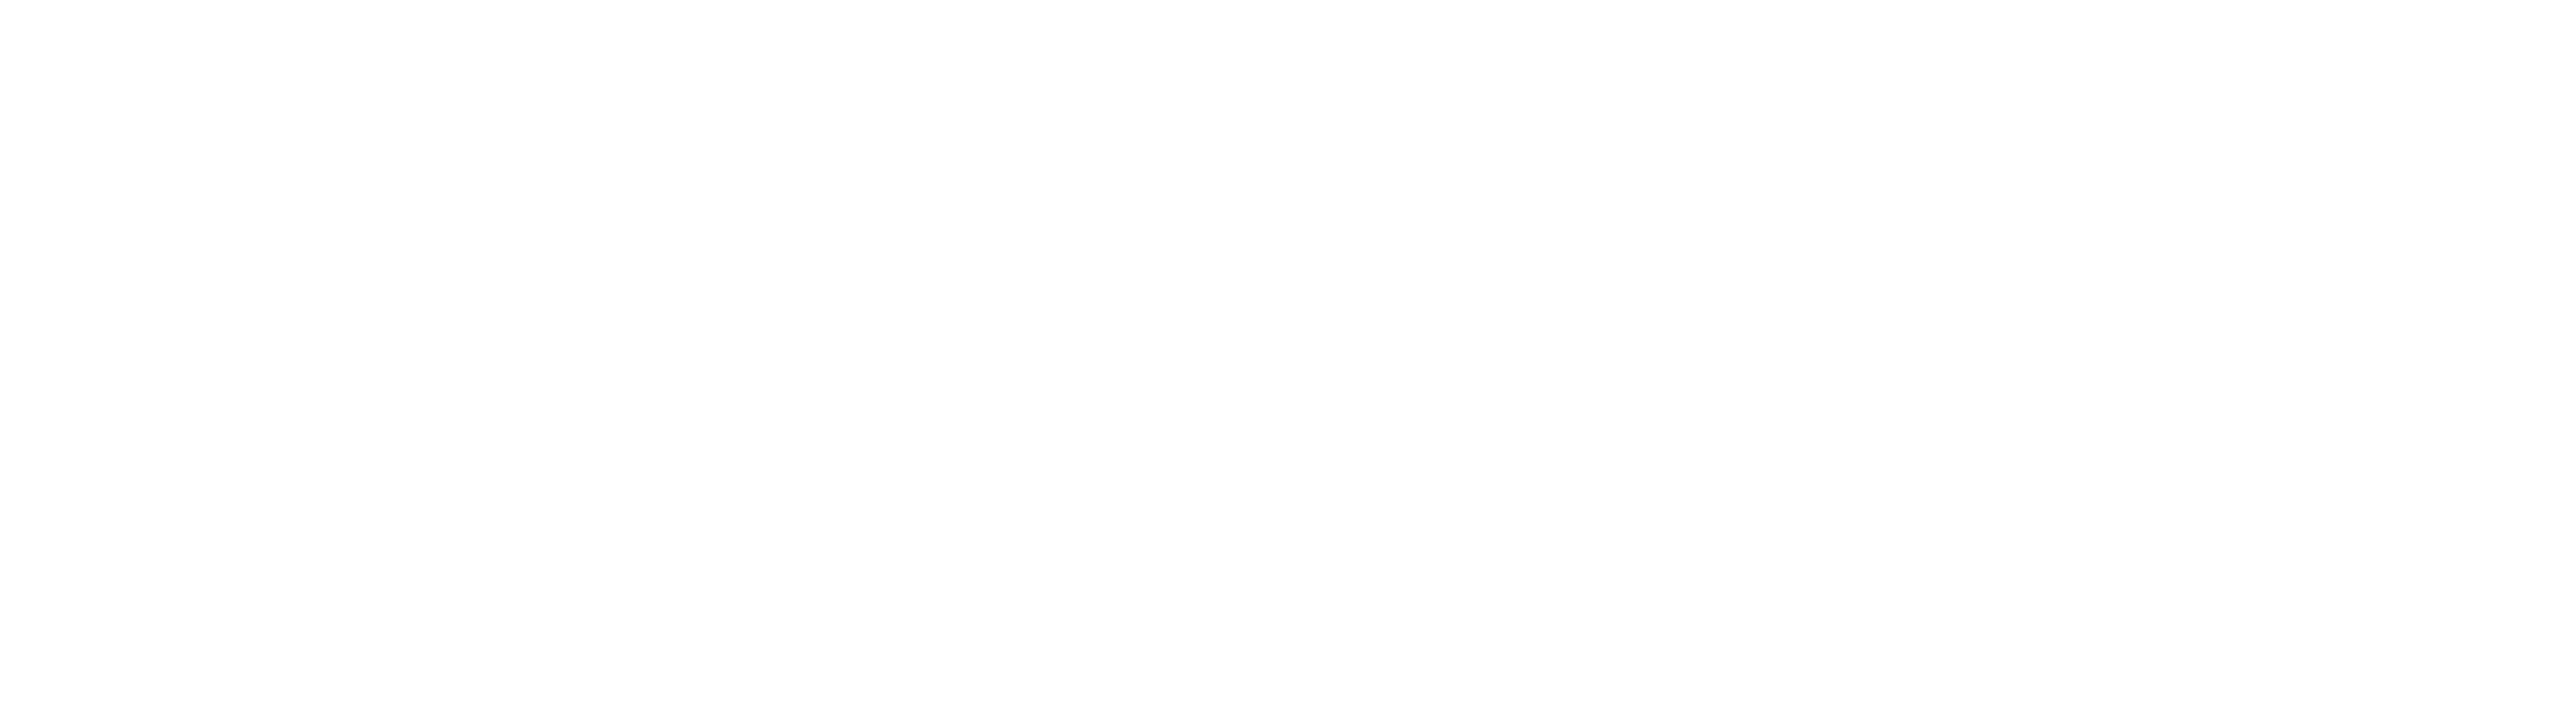 Brad Franko Consulting